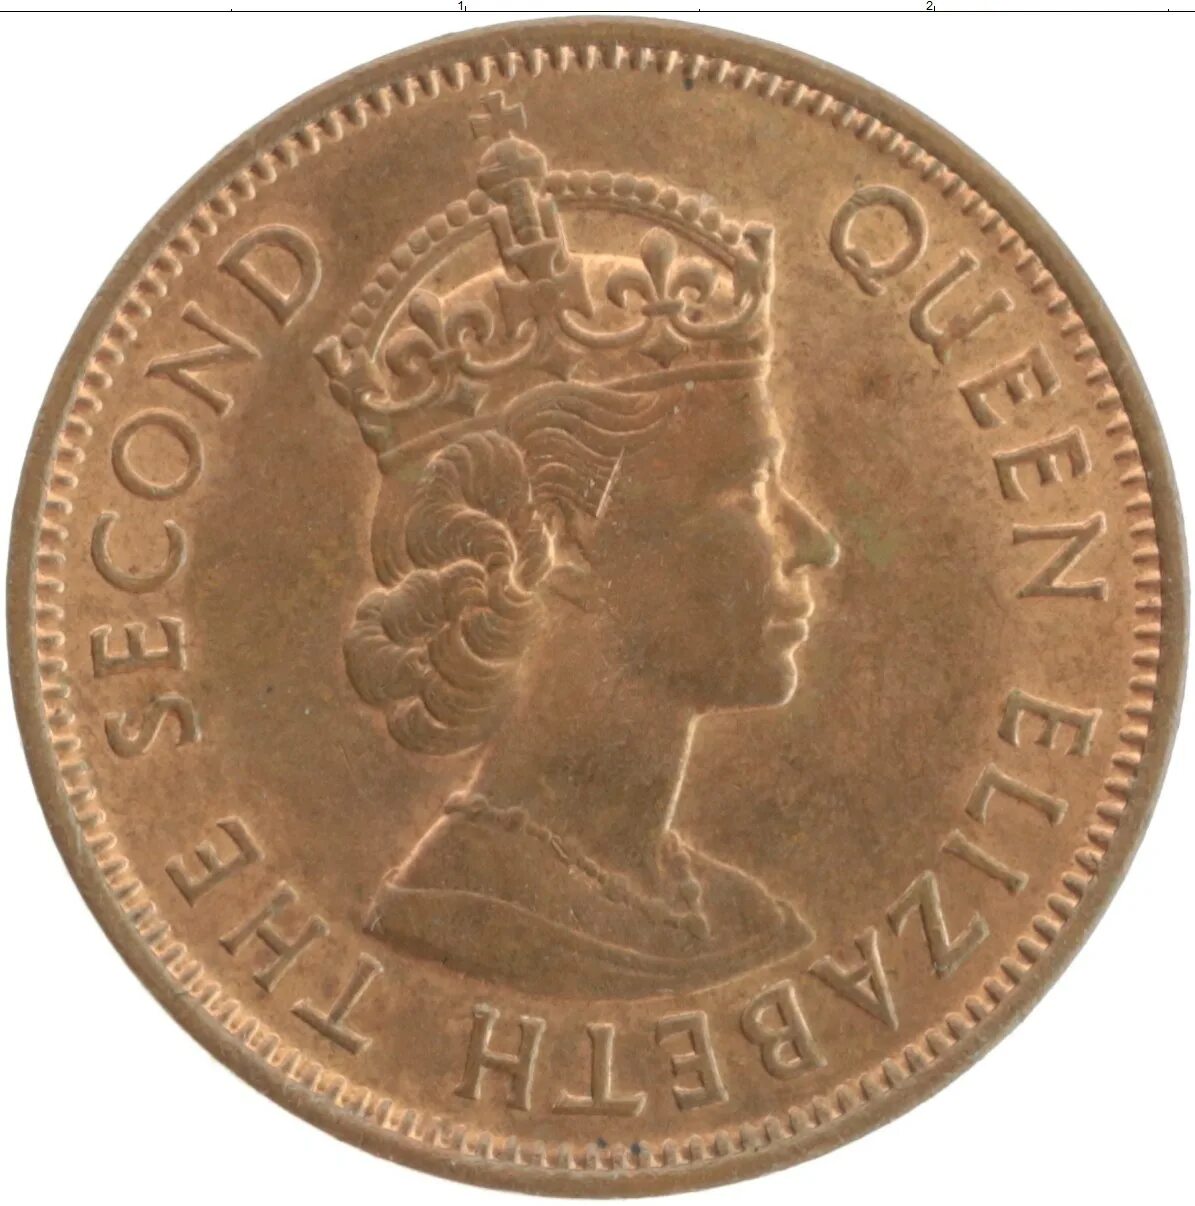 First coins. Elizabeth II D G reg f d 2004 2. Монета Elizabeth 2 d.g reg .f.d 2007. Elizabeth 2 монета 2003.